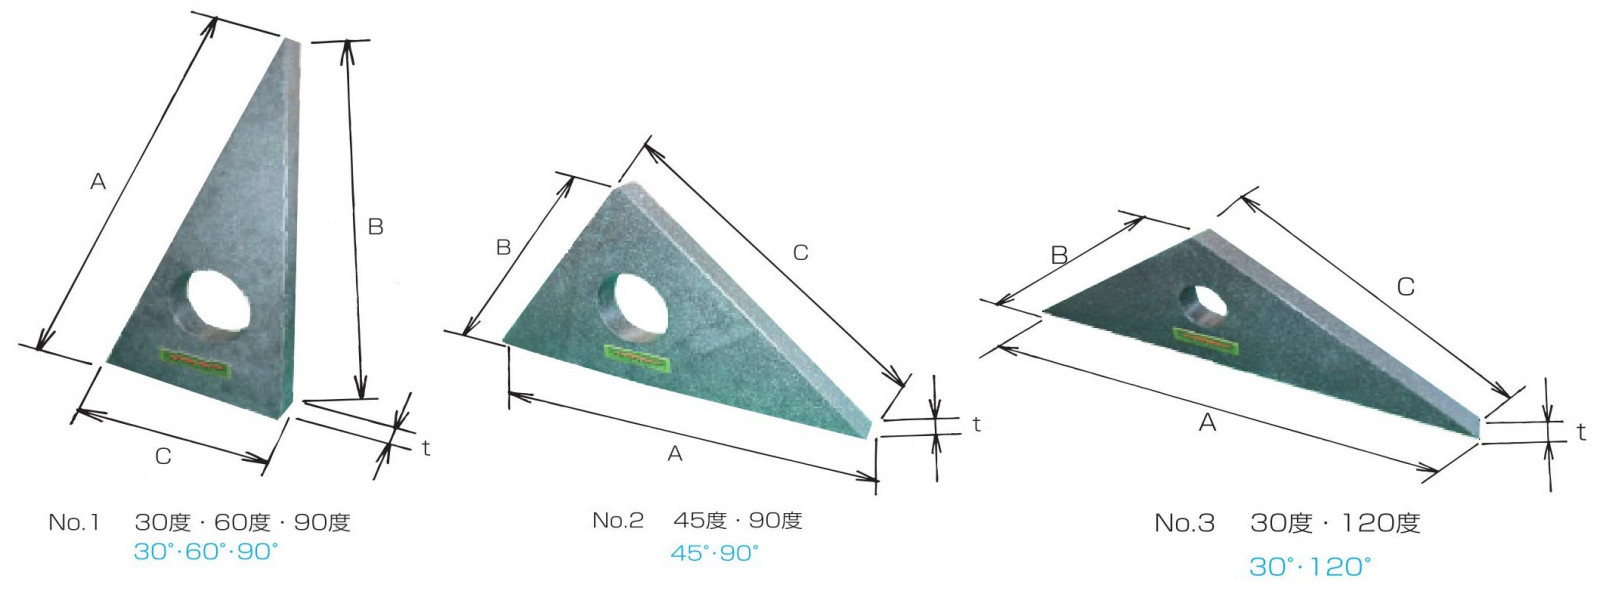 スコヤー 石製三角定規 | 製品詳細 | 大西測定株式会社